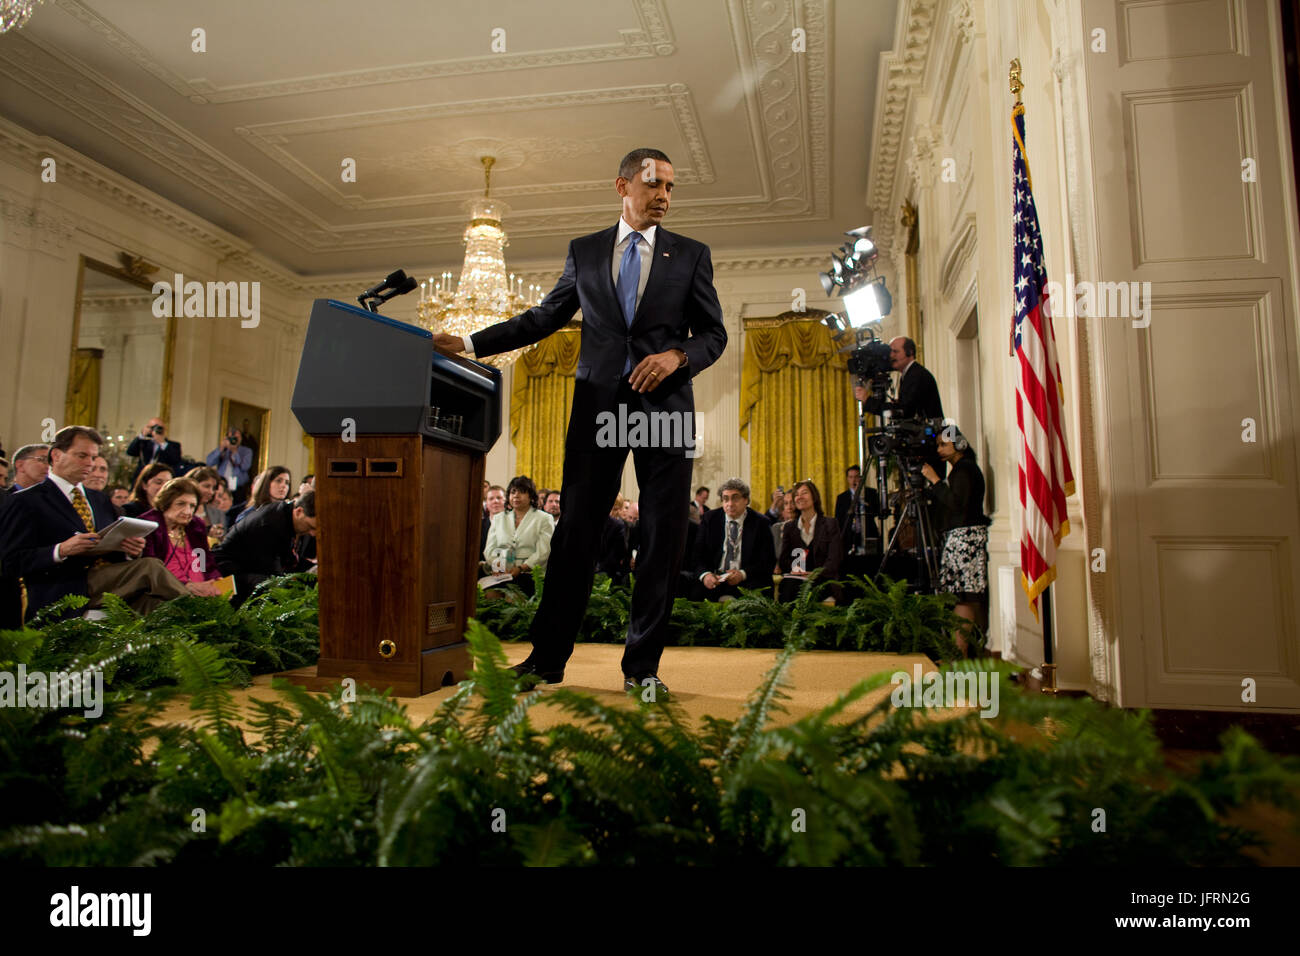 Le président Barack Obama quitte le podium après un premier temps conférence de presse dans l'East Room de la Maison Blanche, le mercredi 29 avril 2009. Photo Officiel de la Maison Blanche par Chuck Kennedy Banque D'Images